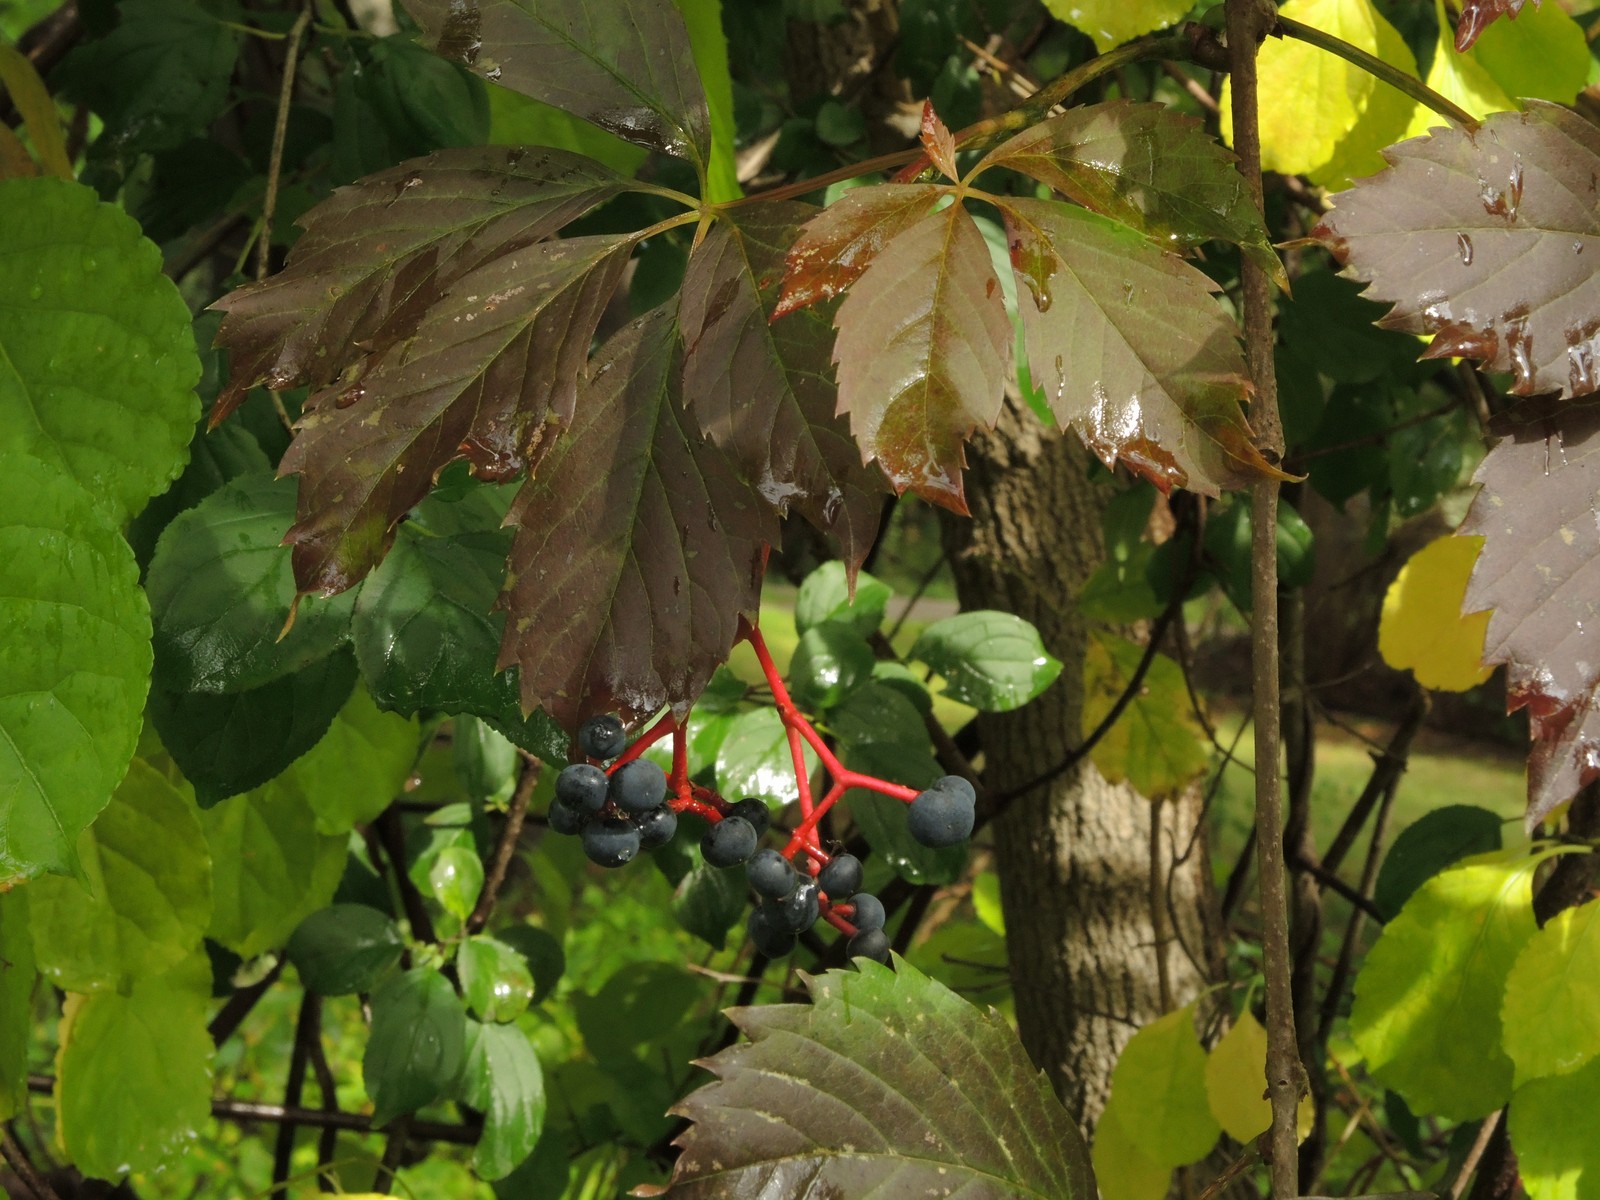 201409211543002 Virginia Creeper (Parthenocissus quinquefolia) vine with blue berries - Oakland Co, Michigan.JPG